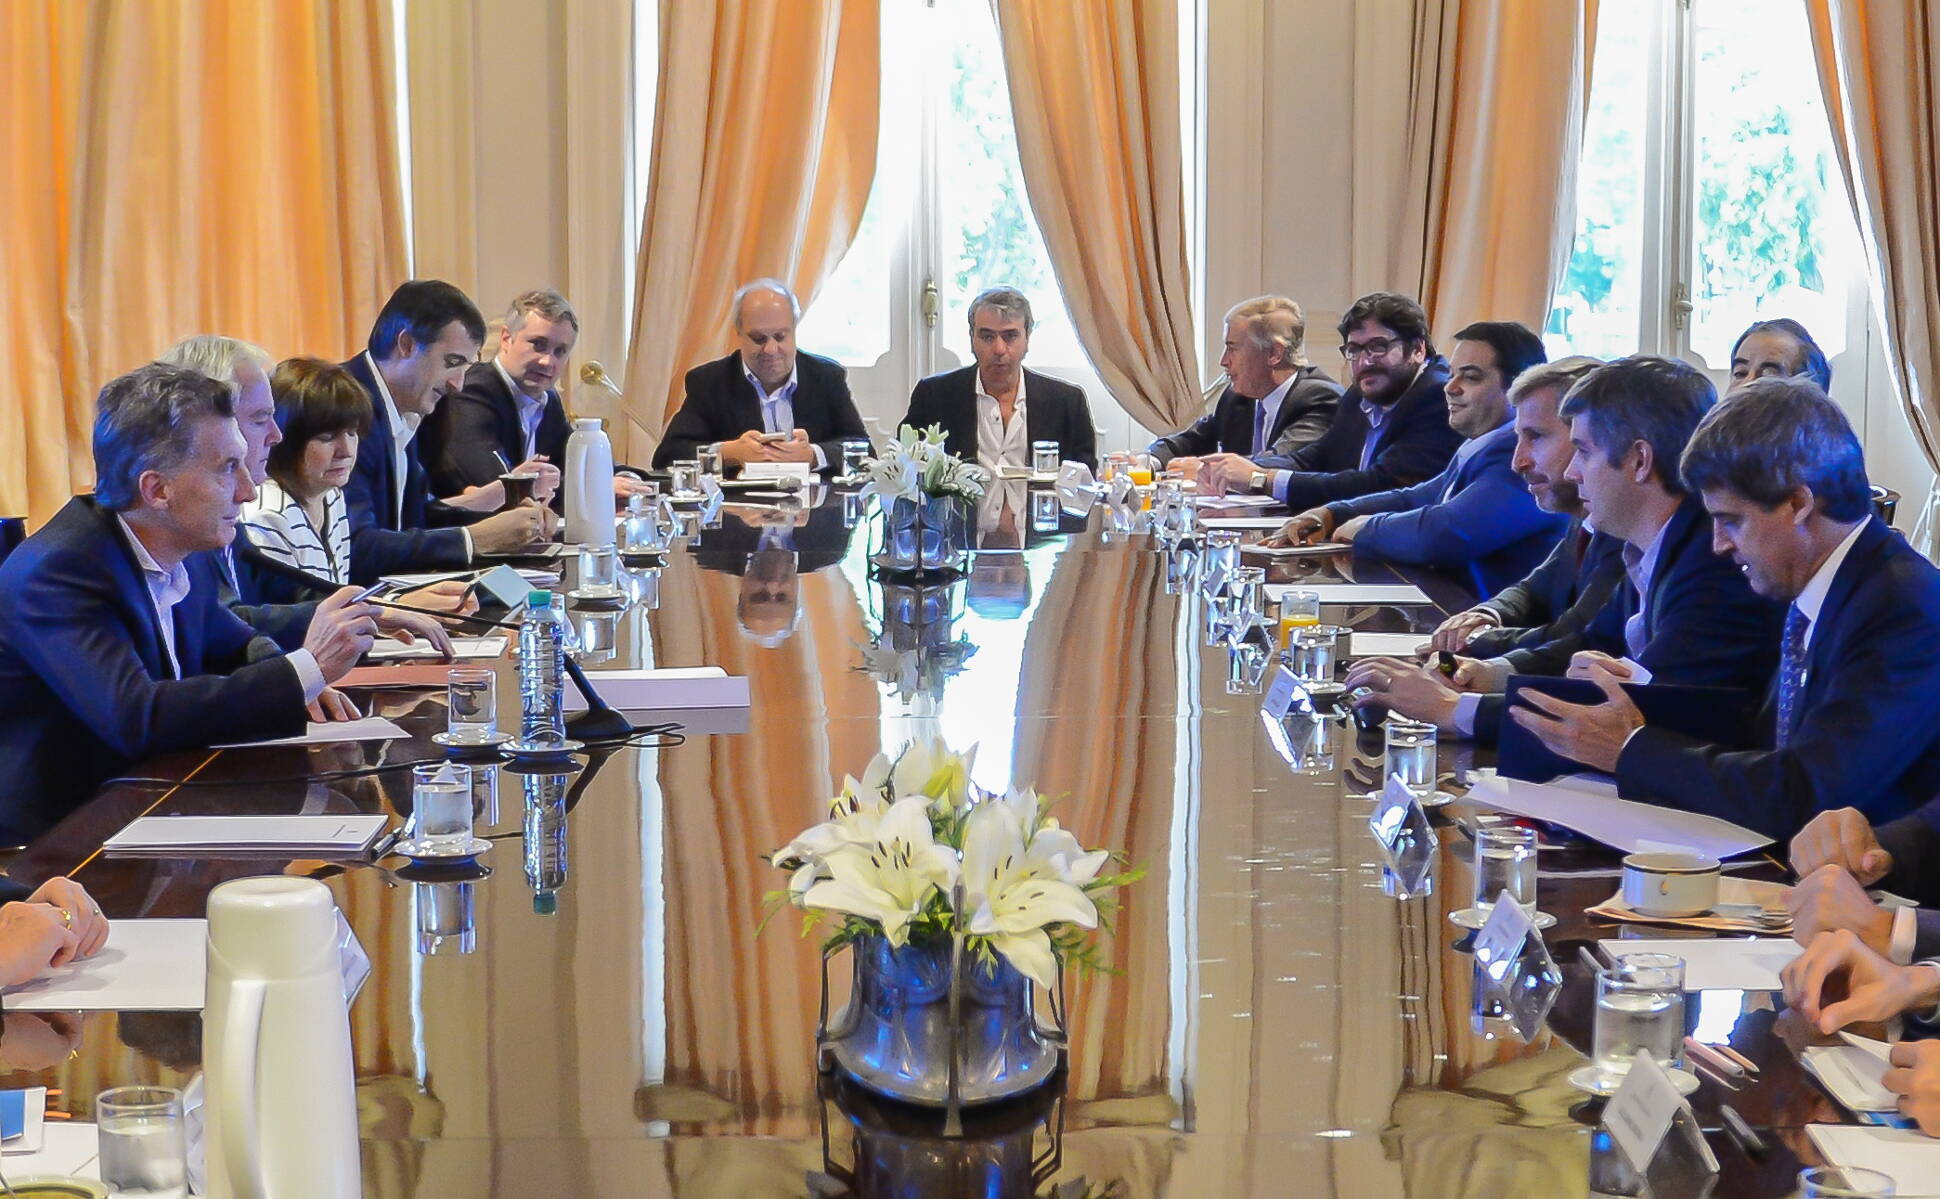 El Presidente encabezó una nueva reunión de Gabinete en Casa Rosada